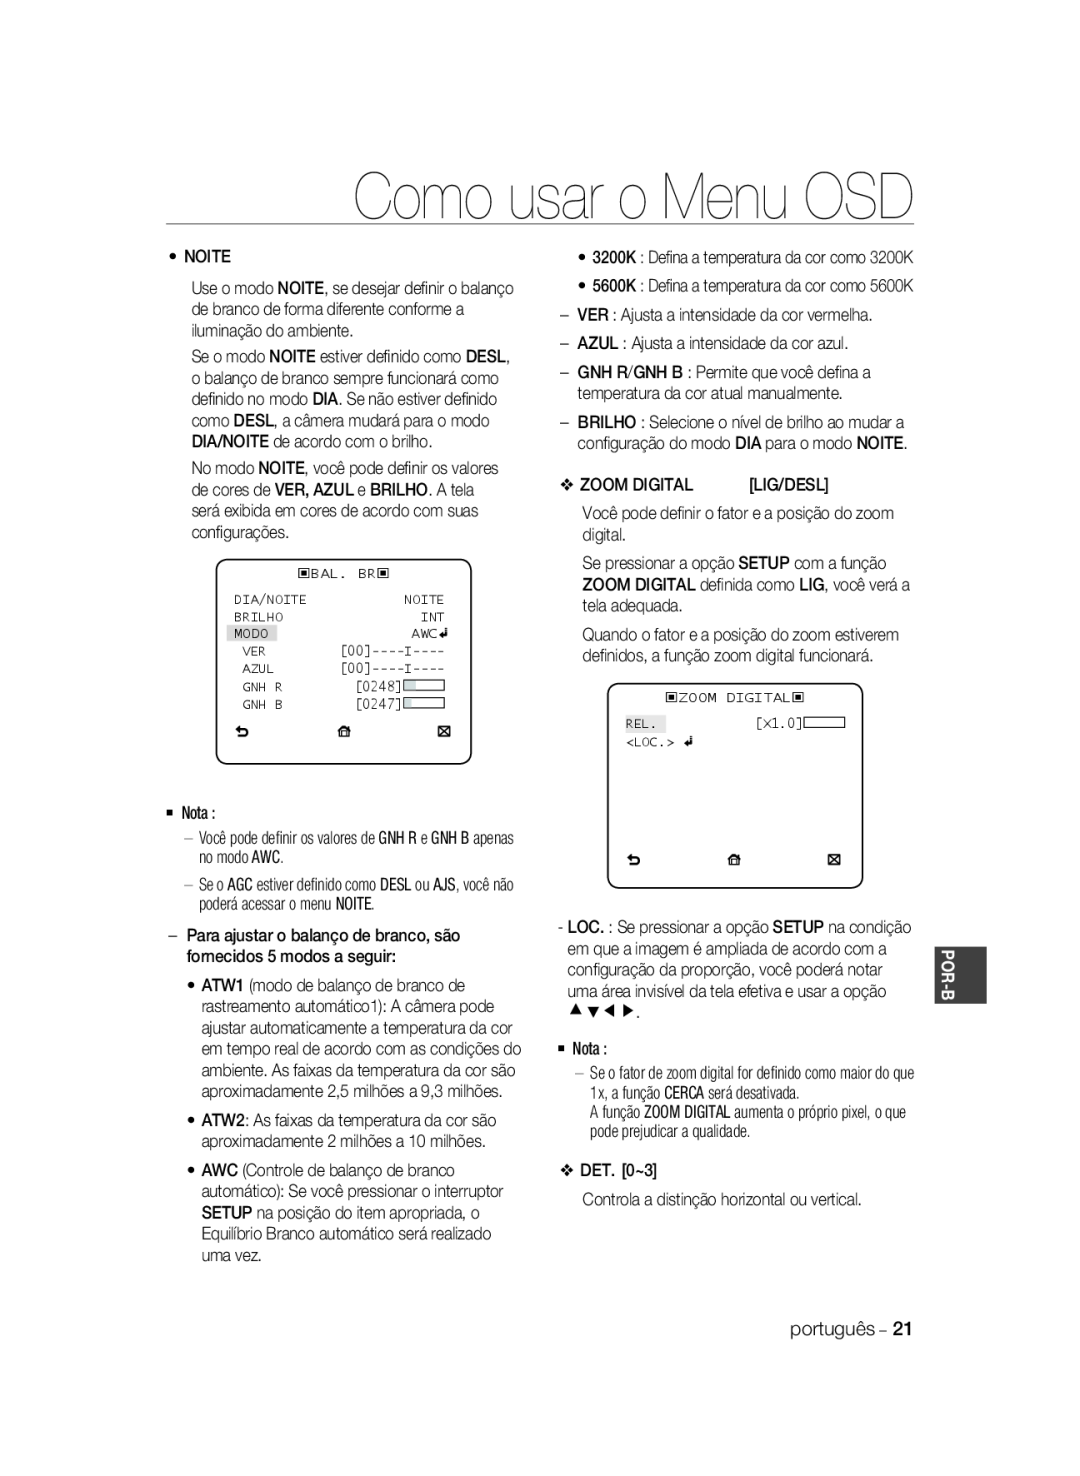 Samsung SCC-A2033P, SCC-A2333P Como usar o Menu OSD, Para ajustar o balanço de branco, são fornecidos 5 modos a seguir 